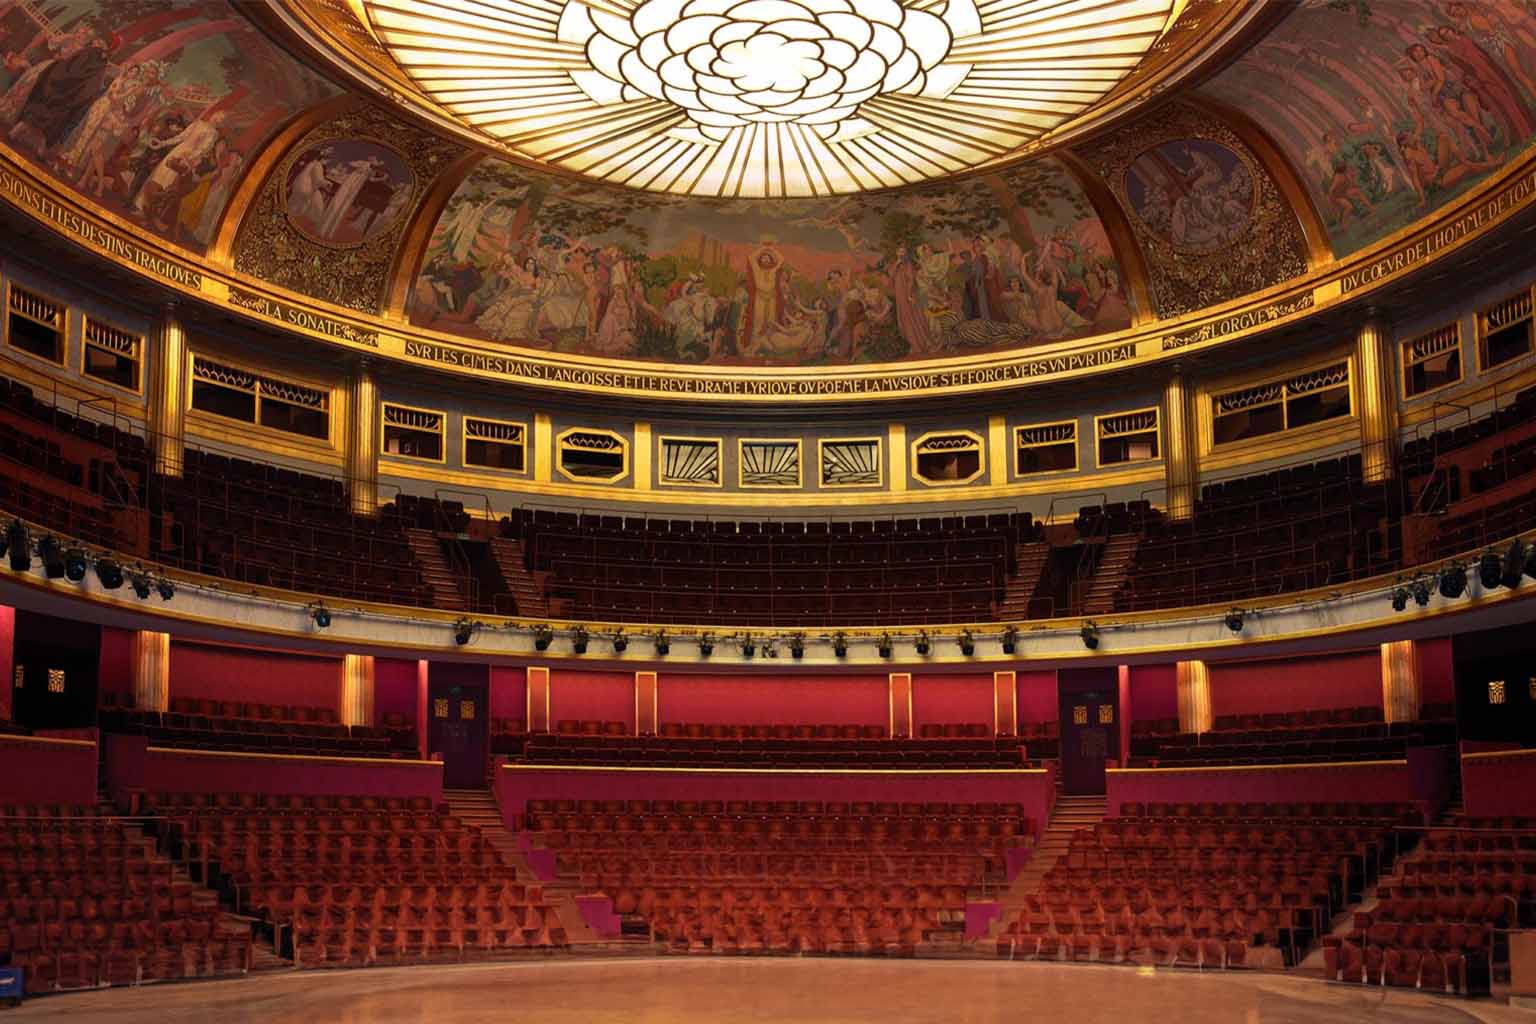 Desmaret and Campra's Iphigénie en Tauride at theatre des champs elysees paris